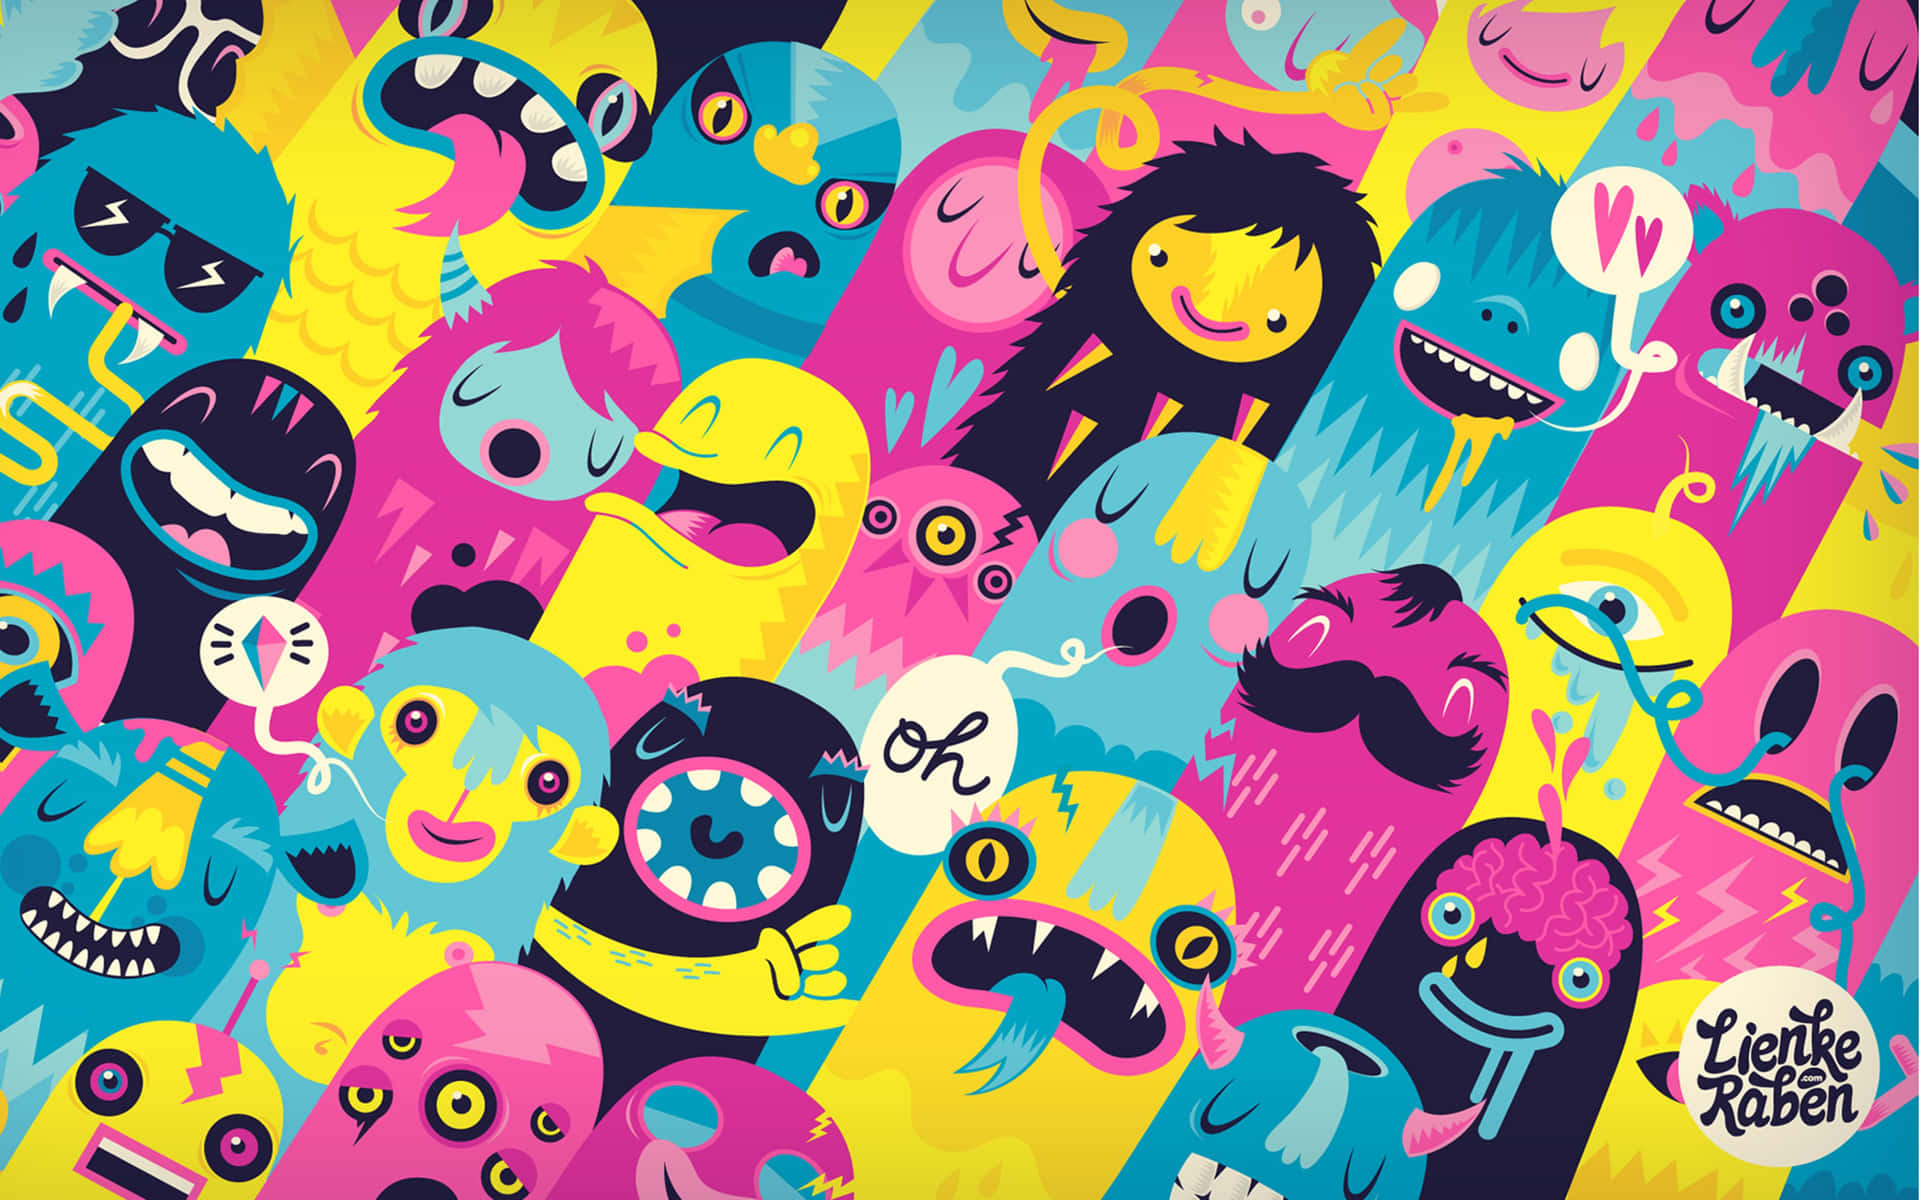 Cute Monster Wallpaper: Những chú quái vật đáng yêu sẽ đem lại nụ cười và cảm giác vui vẻ cho bạn khi sử dụng thiết bị iPad của mình. Với đủ màu sắc và sự kết hợp tinh tế, chúng tôi đảm bảo bạn sẽ tìm thấy hình nền yêu thích của mình trong kho tàng hình ảnh đa dạng của chúng tôi.